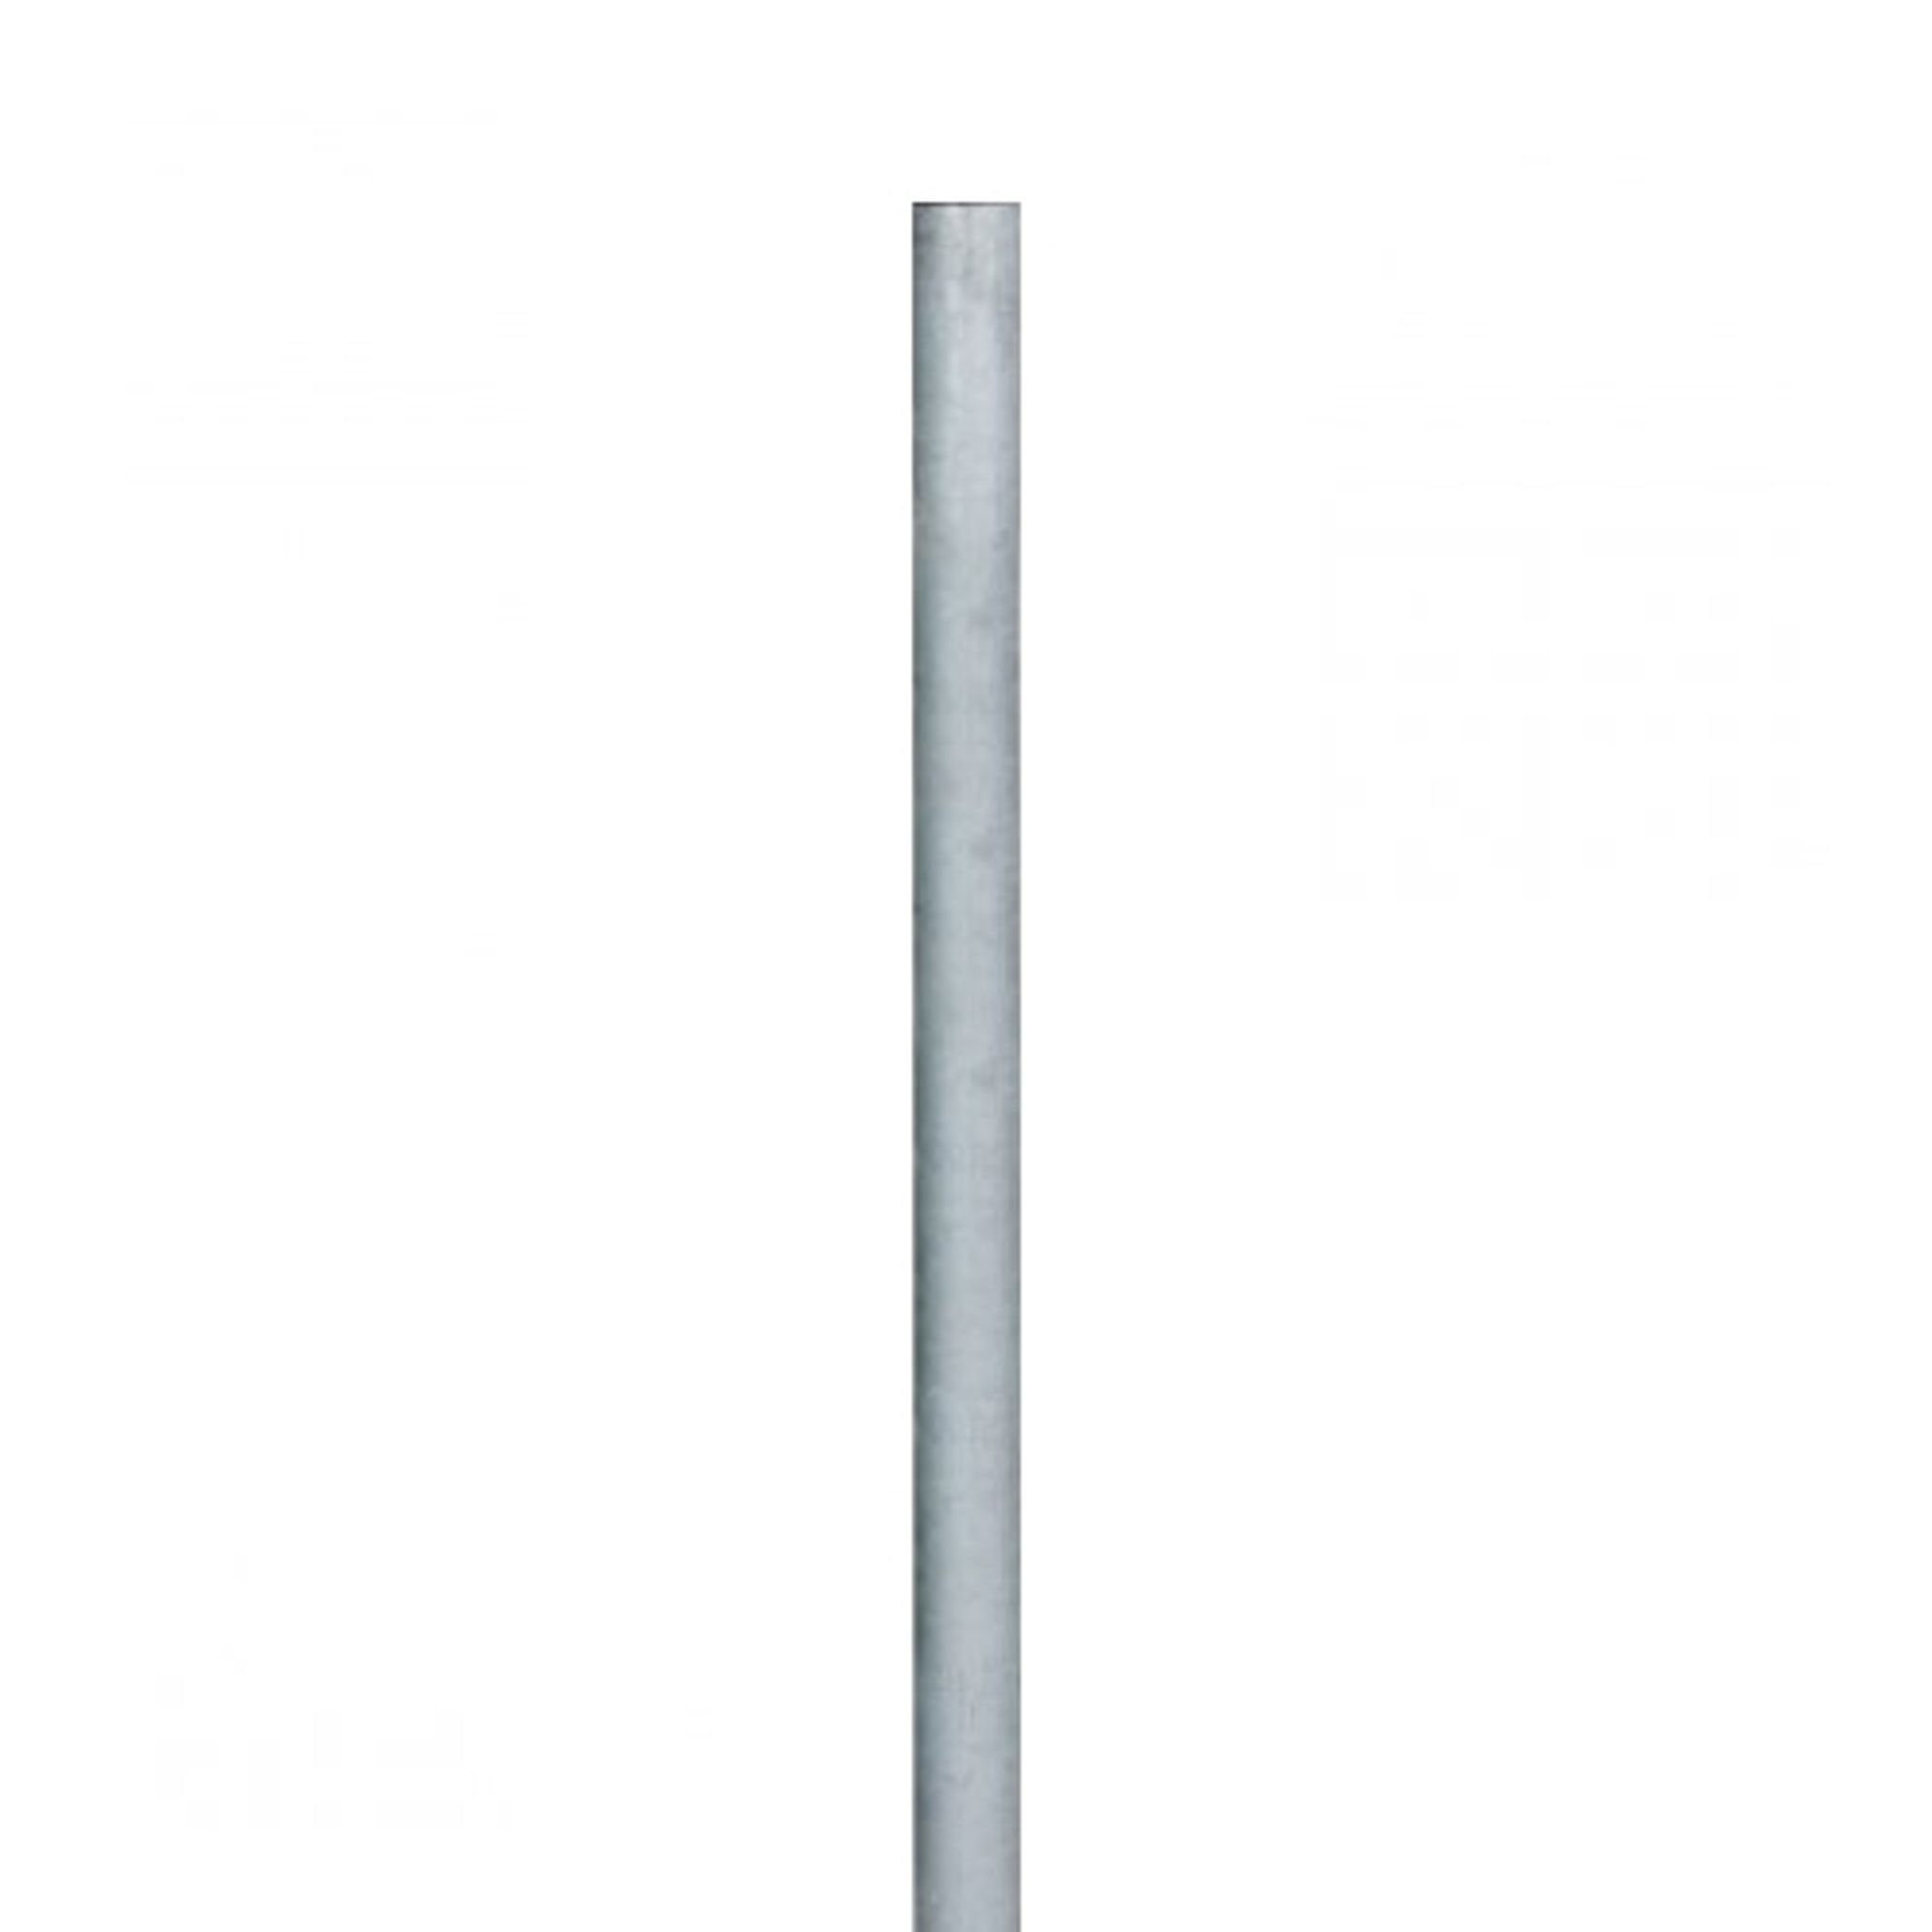 Sloupek pro osazení dopravních značek, FeZn trubka, 2,5 m